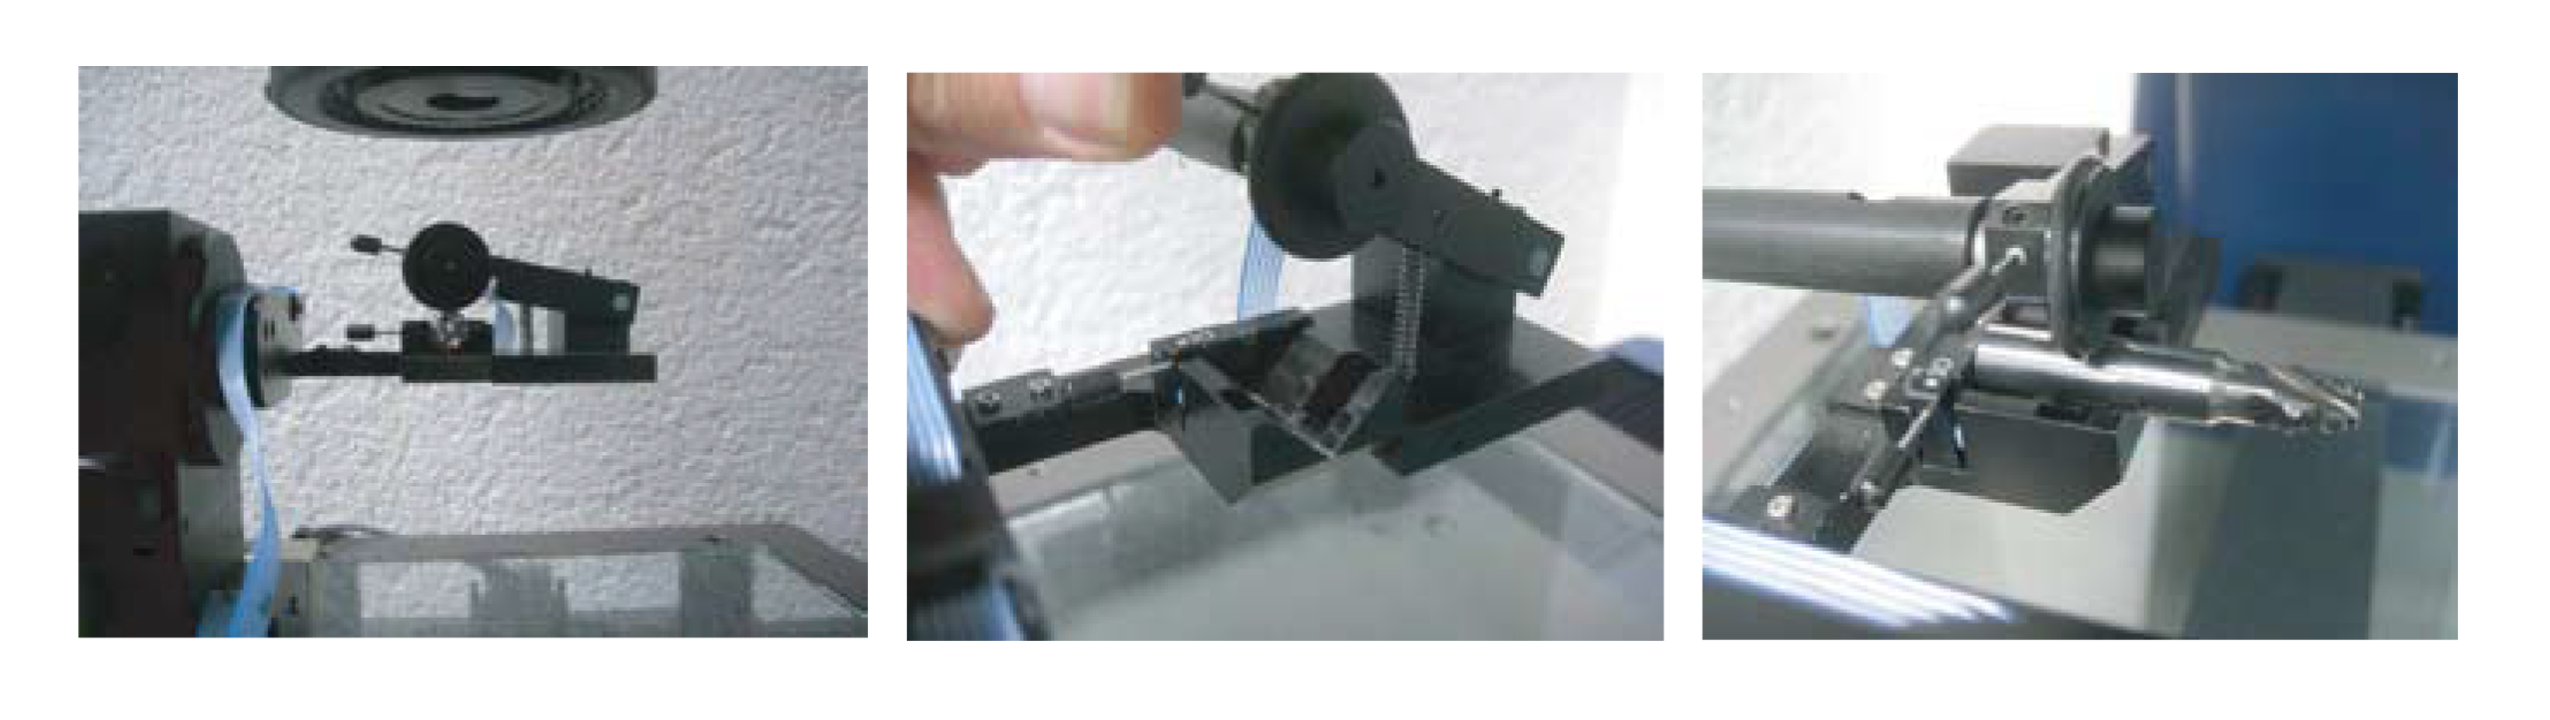 瑞士丹青进口werth厂家高精度蓝宝石镀膜V型槽对刀仪nanomatic刀具测量仪蓝牙数据传输 瑞士进口国产